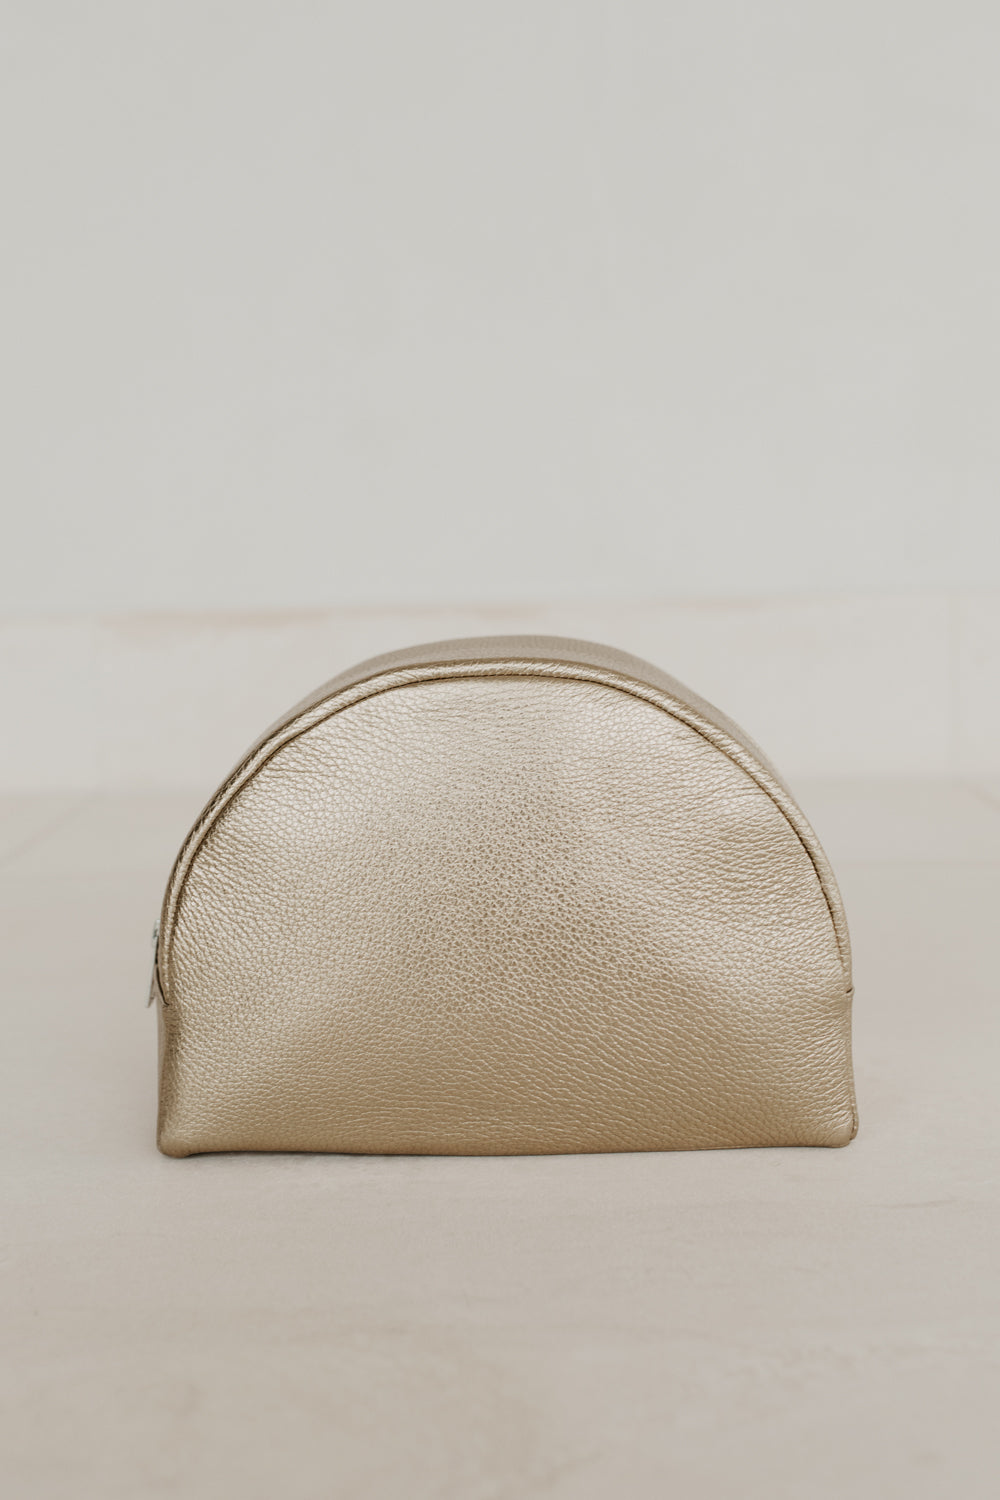 Make-Up Bag | Soft Gold Structured